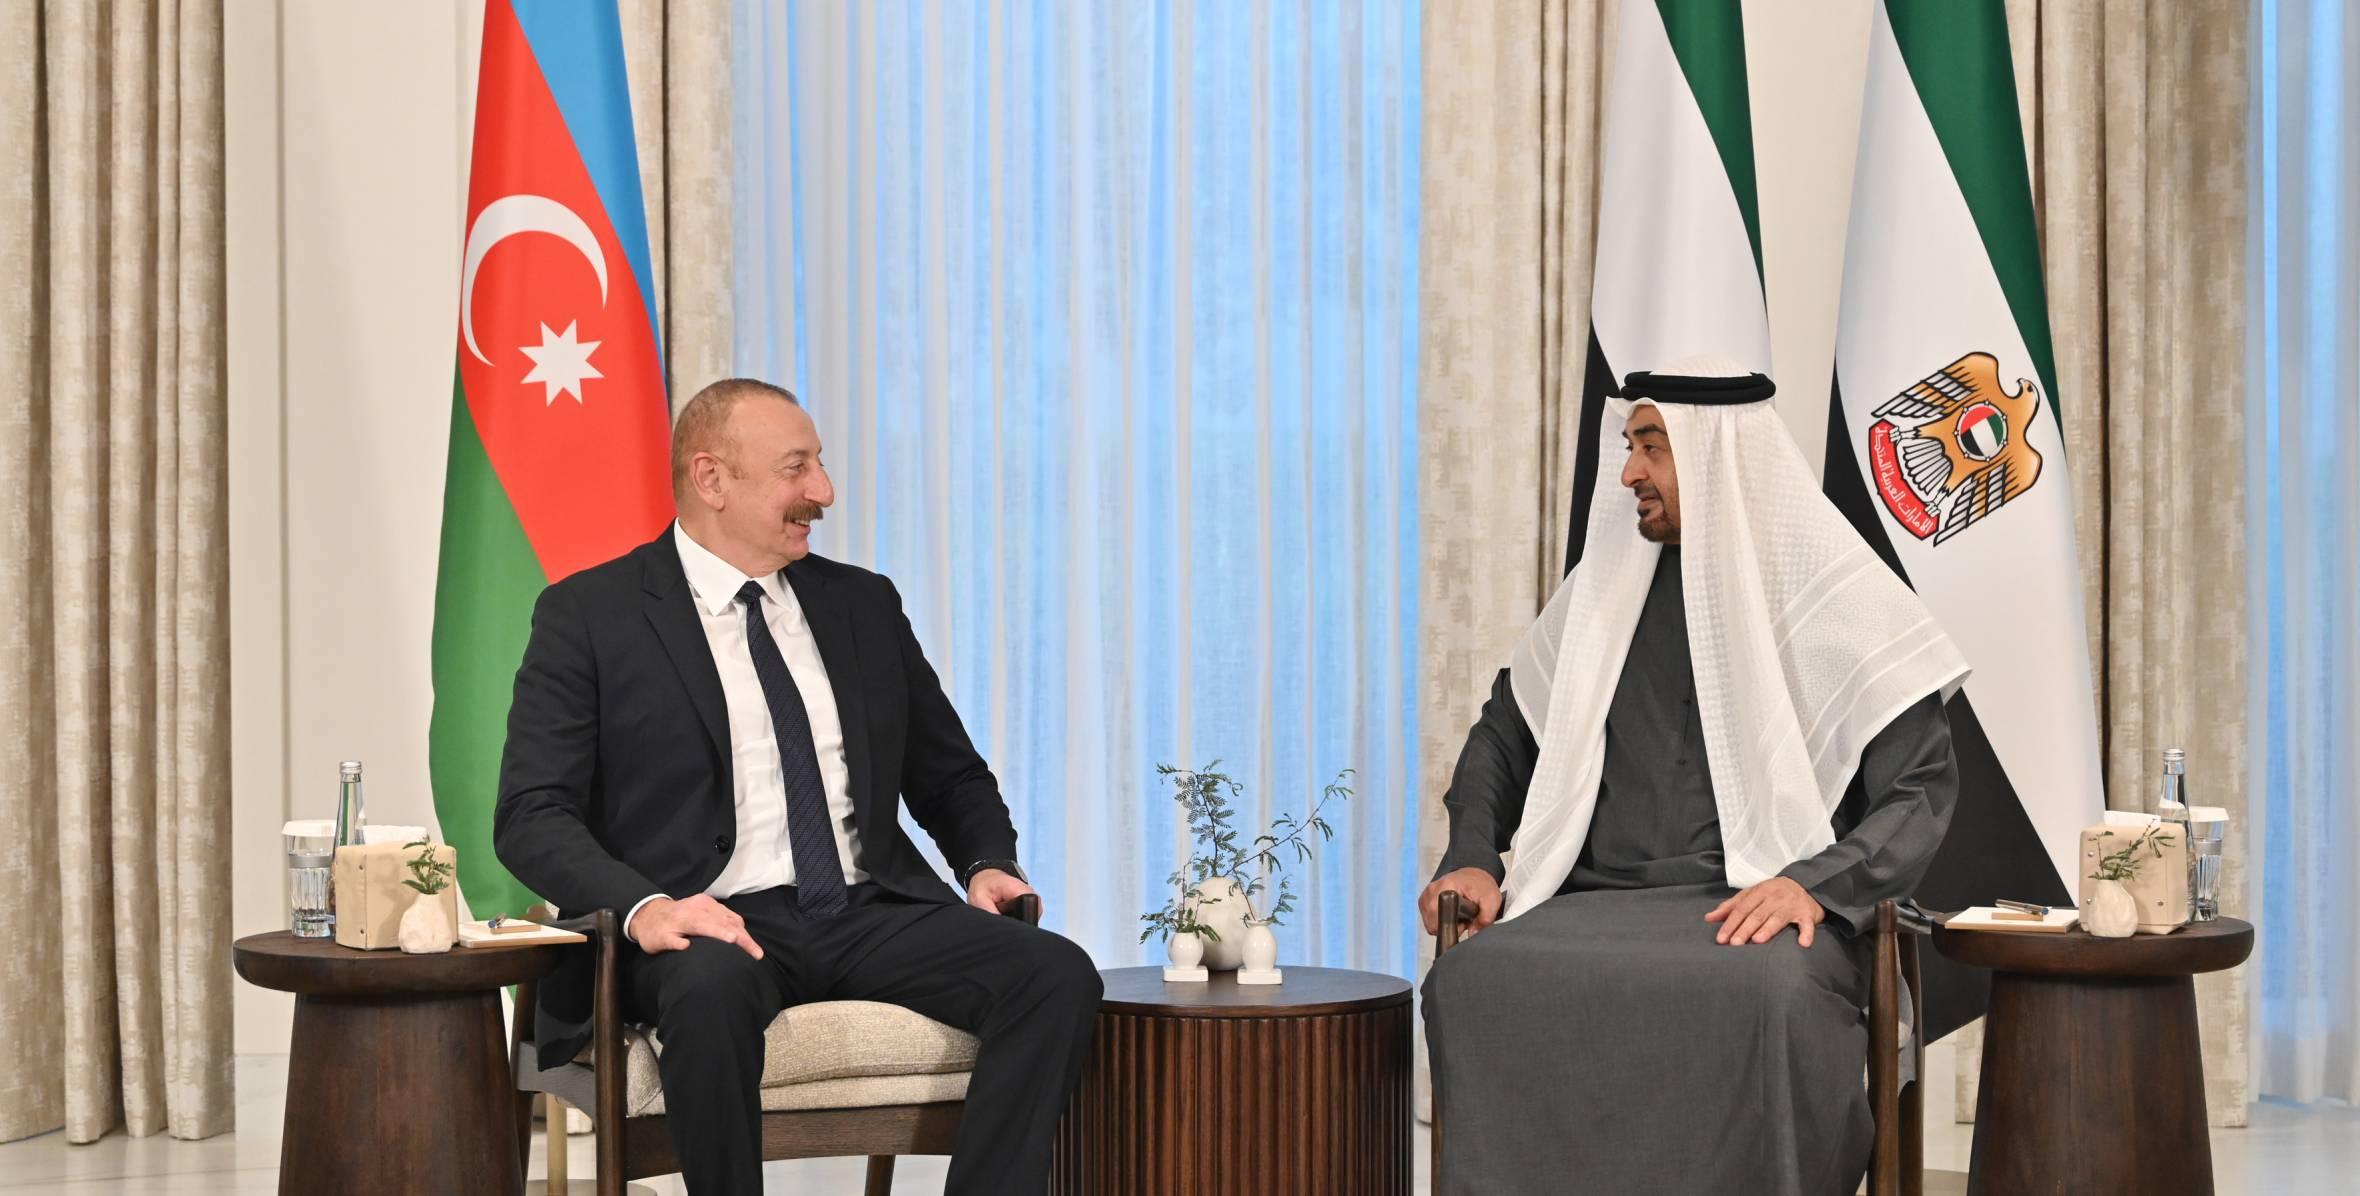 Tokayev and Aliyev Visit UAE: Increased UAE-Caspian Cooperation?